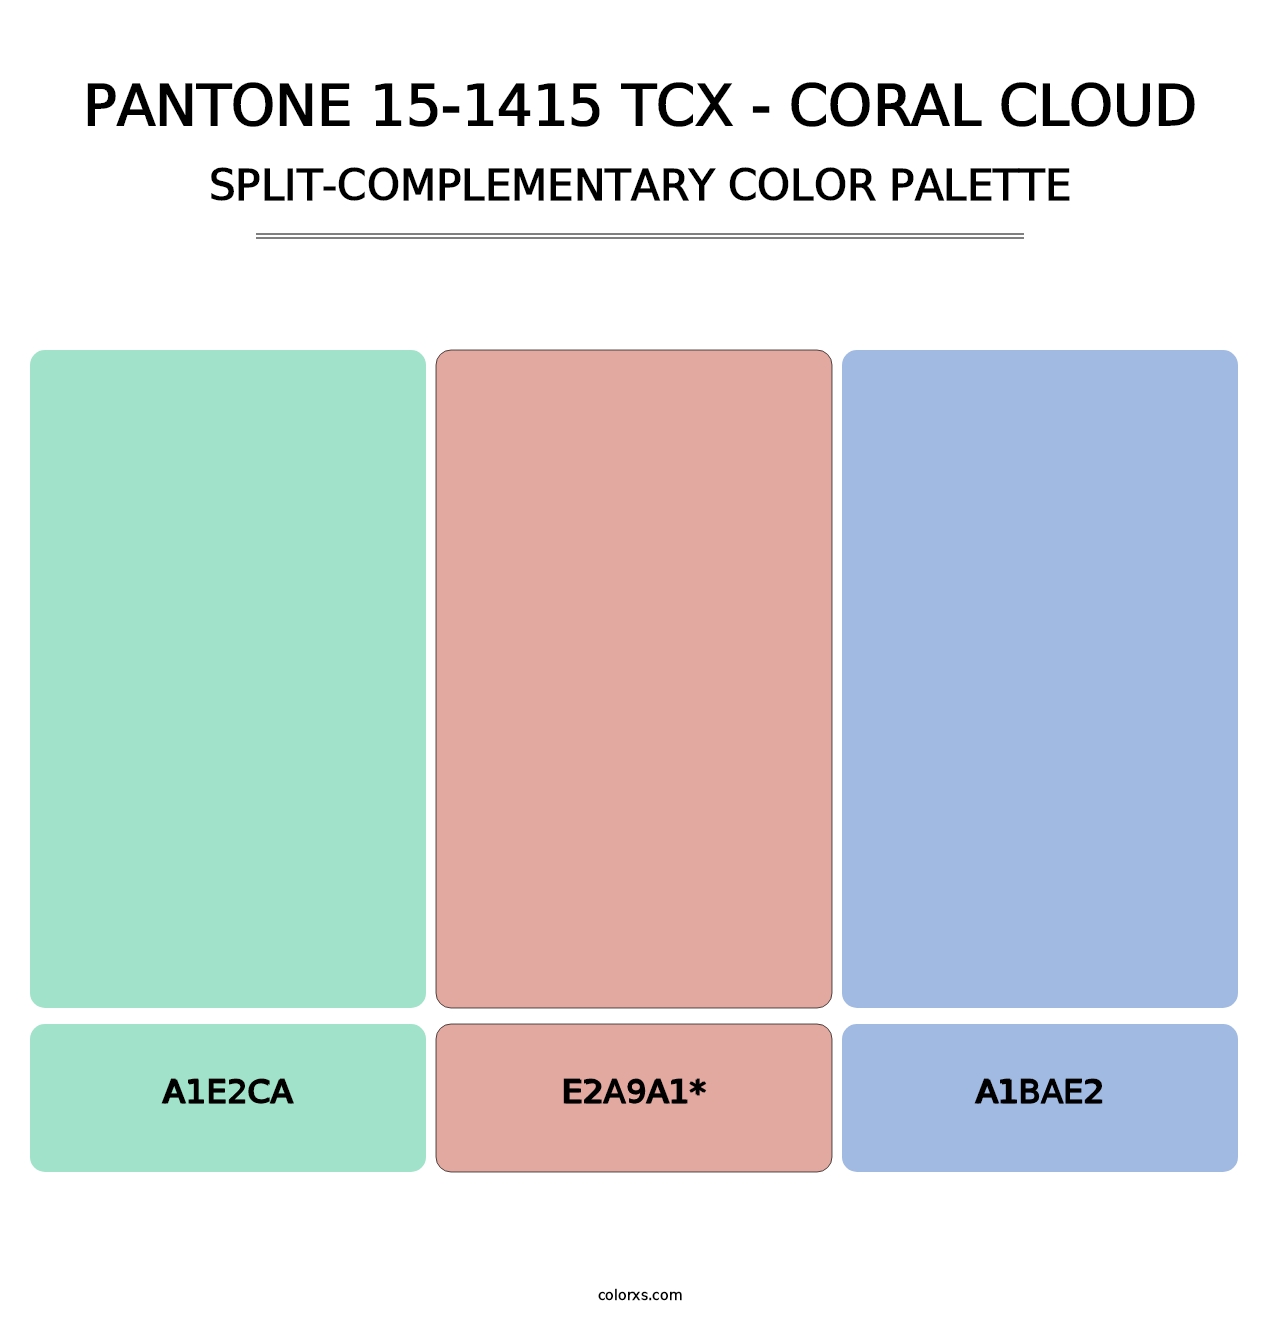 PANTONE 15-1415 TCX - Coral Cloud - Split-Complementary Color Palette